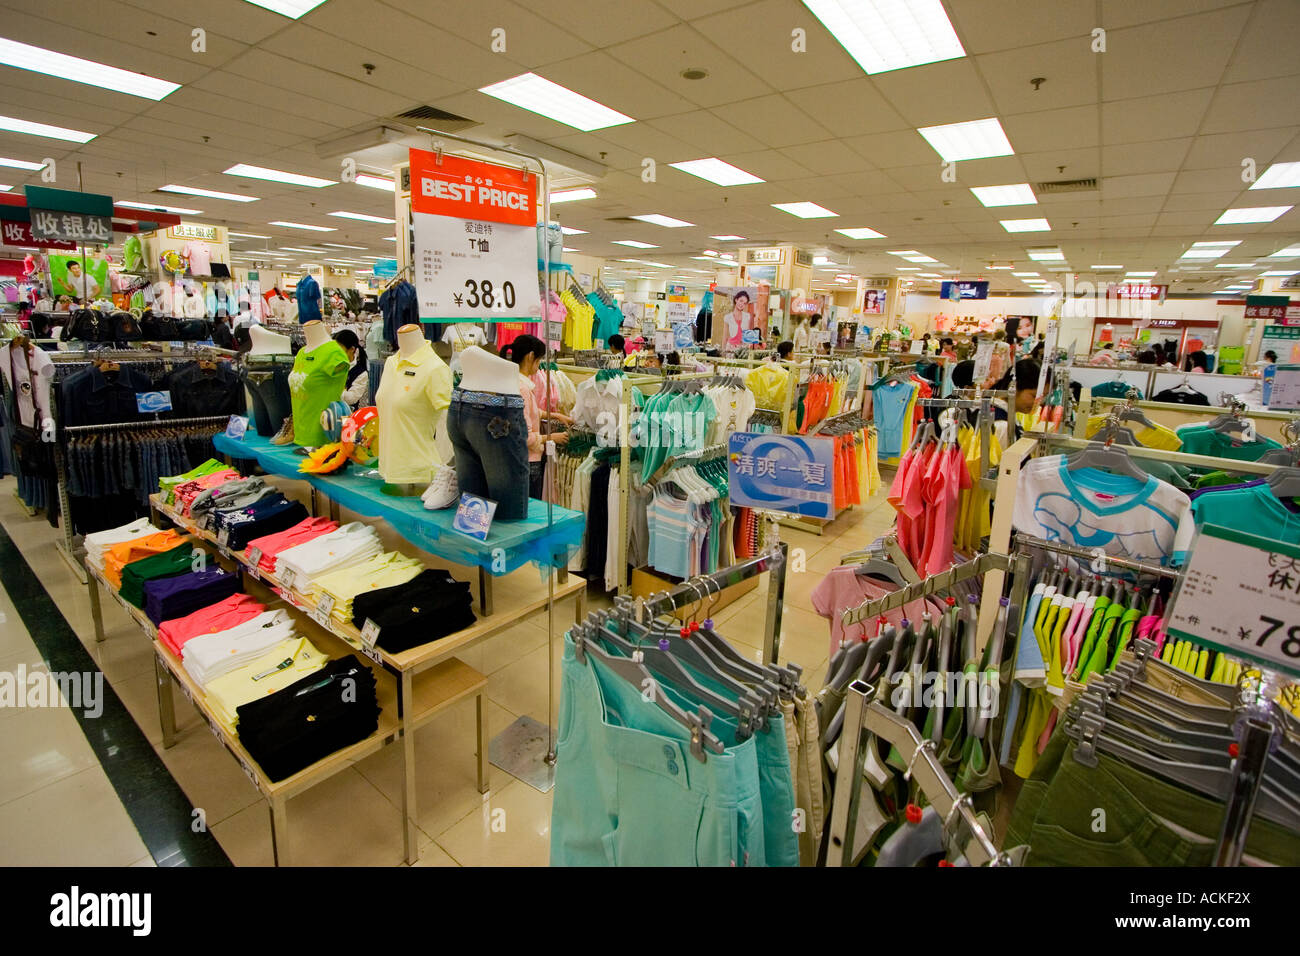 Vêtements pour la vente dans un magasin chinois Shenzhen Chine Photo Stock  - Alamy